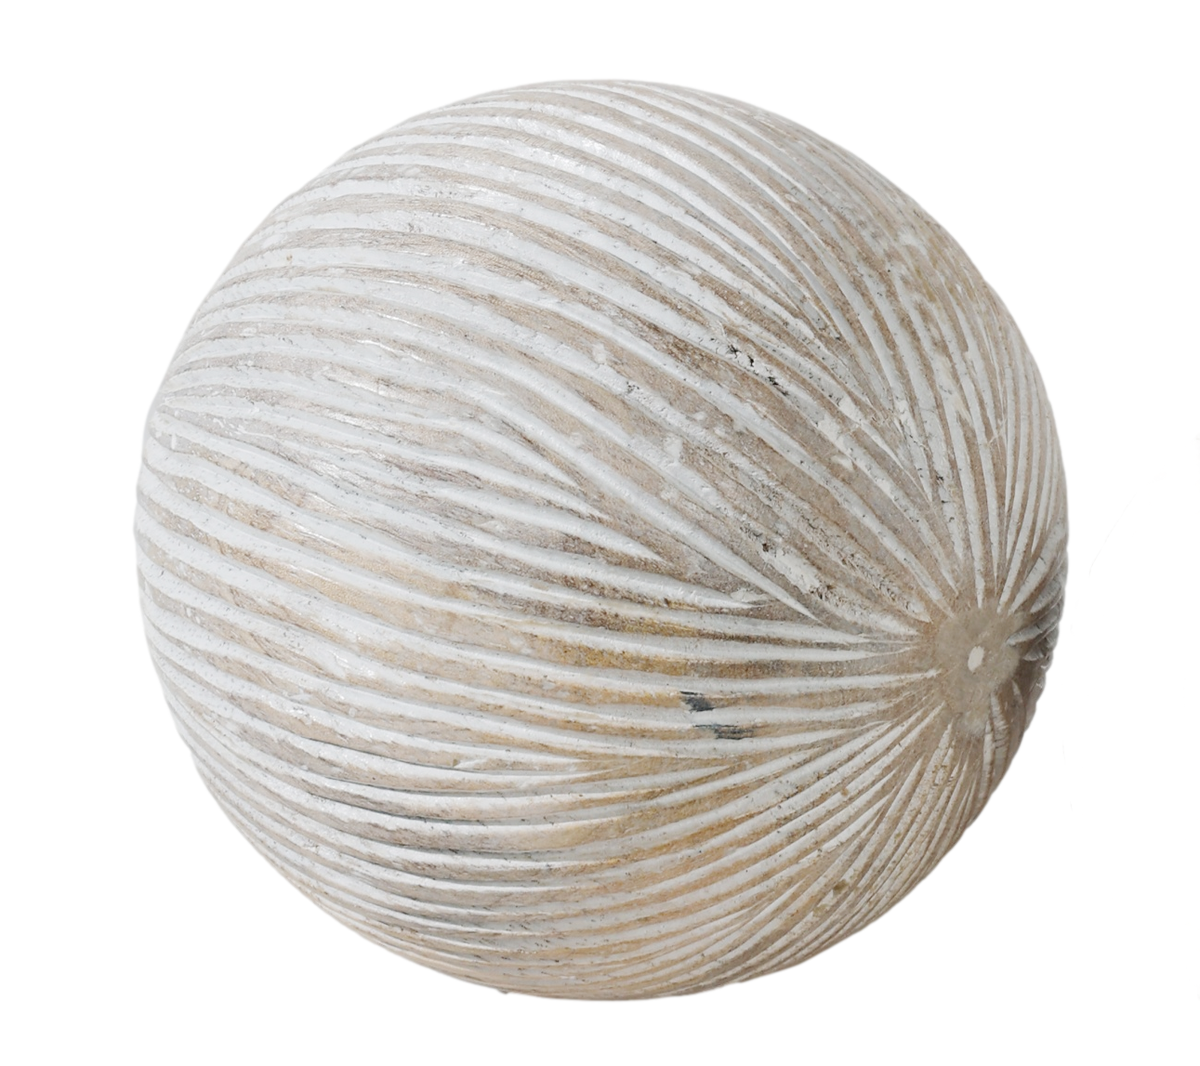 8cm Cyrus Decor Wooden Sphere